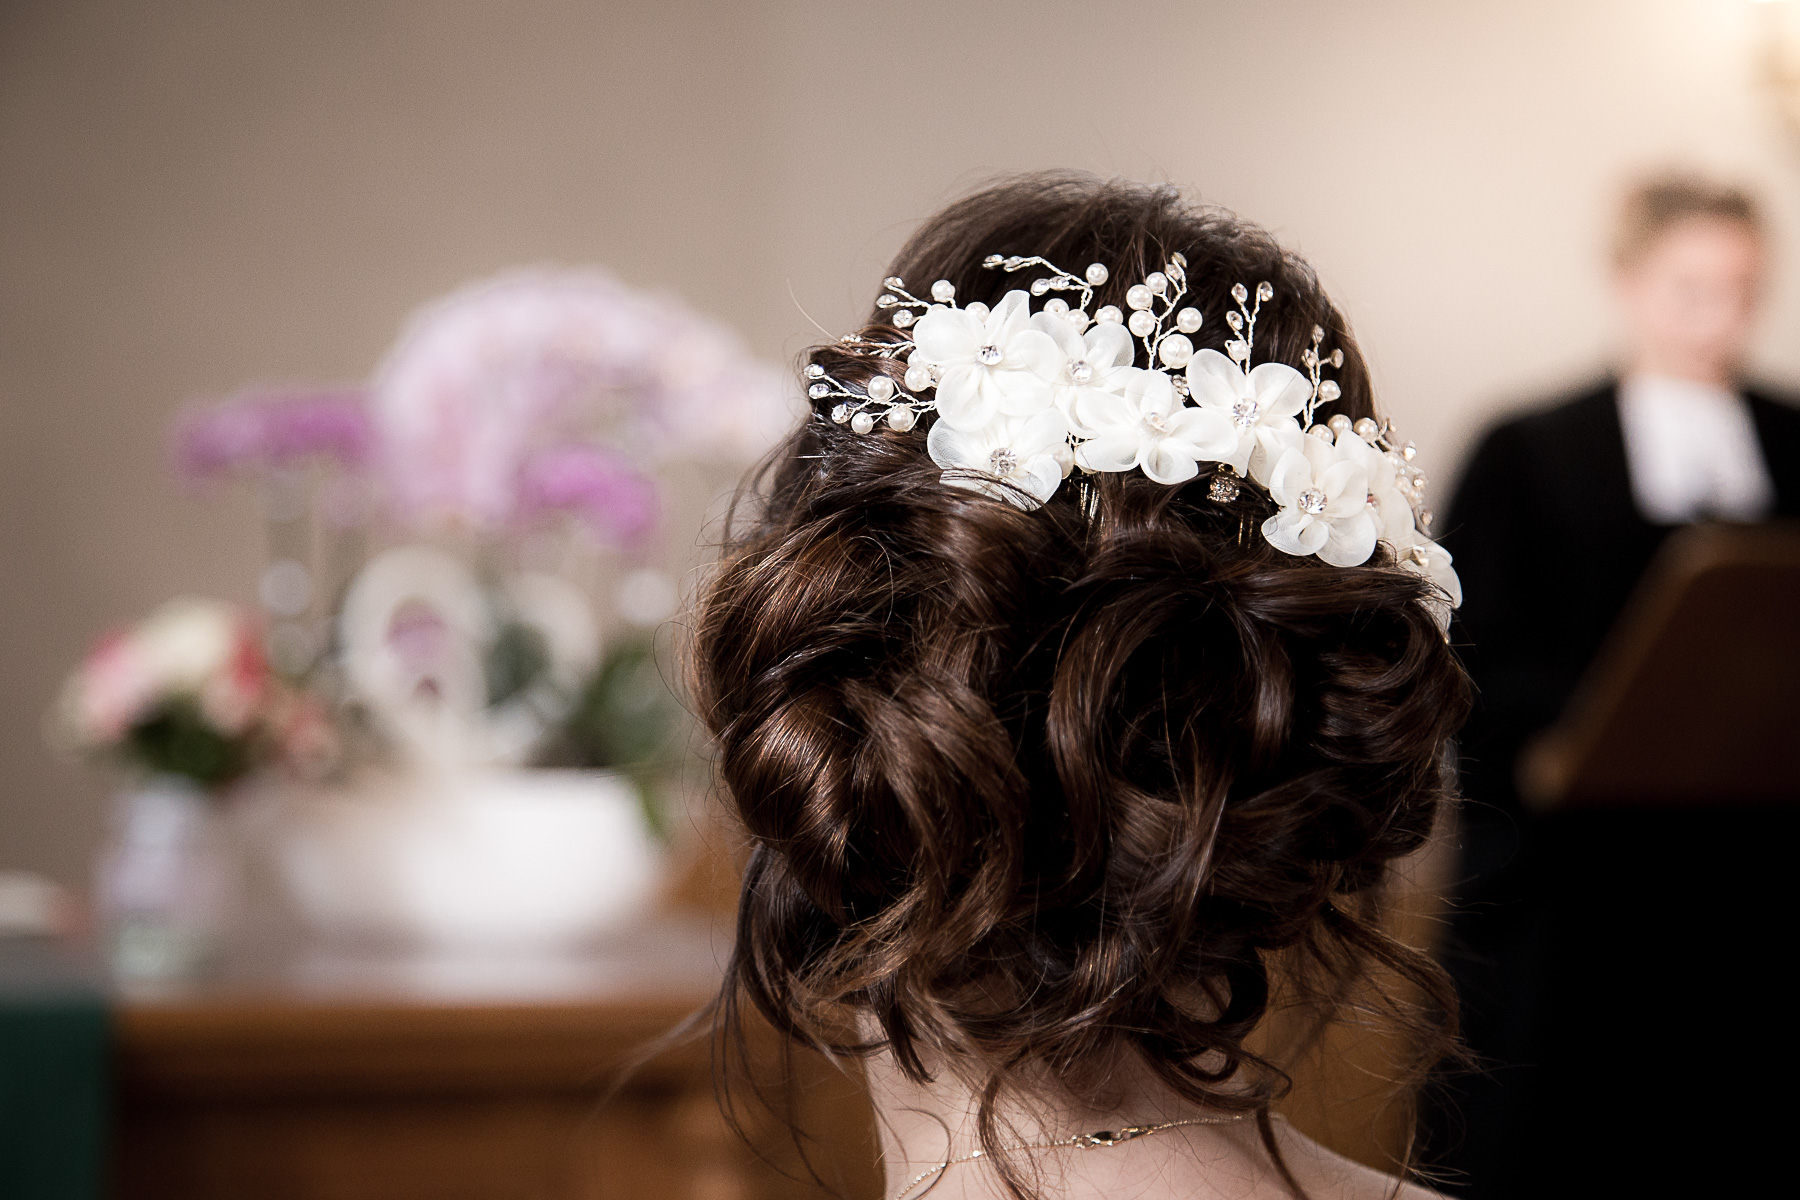 Eine Detailaufnahme der Frisur von der Braut aus der Rückansicht. Sie hat eine elegante Chignon-Frisur mit einer weißen Haarbrosche.